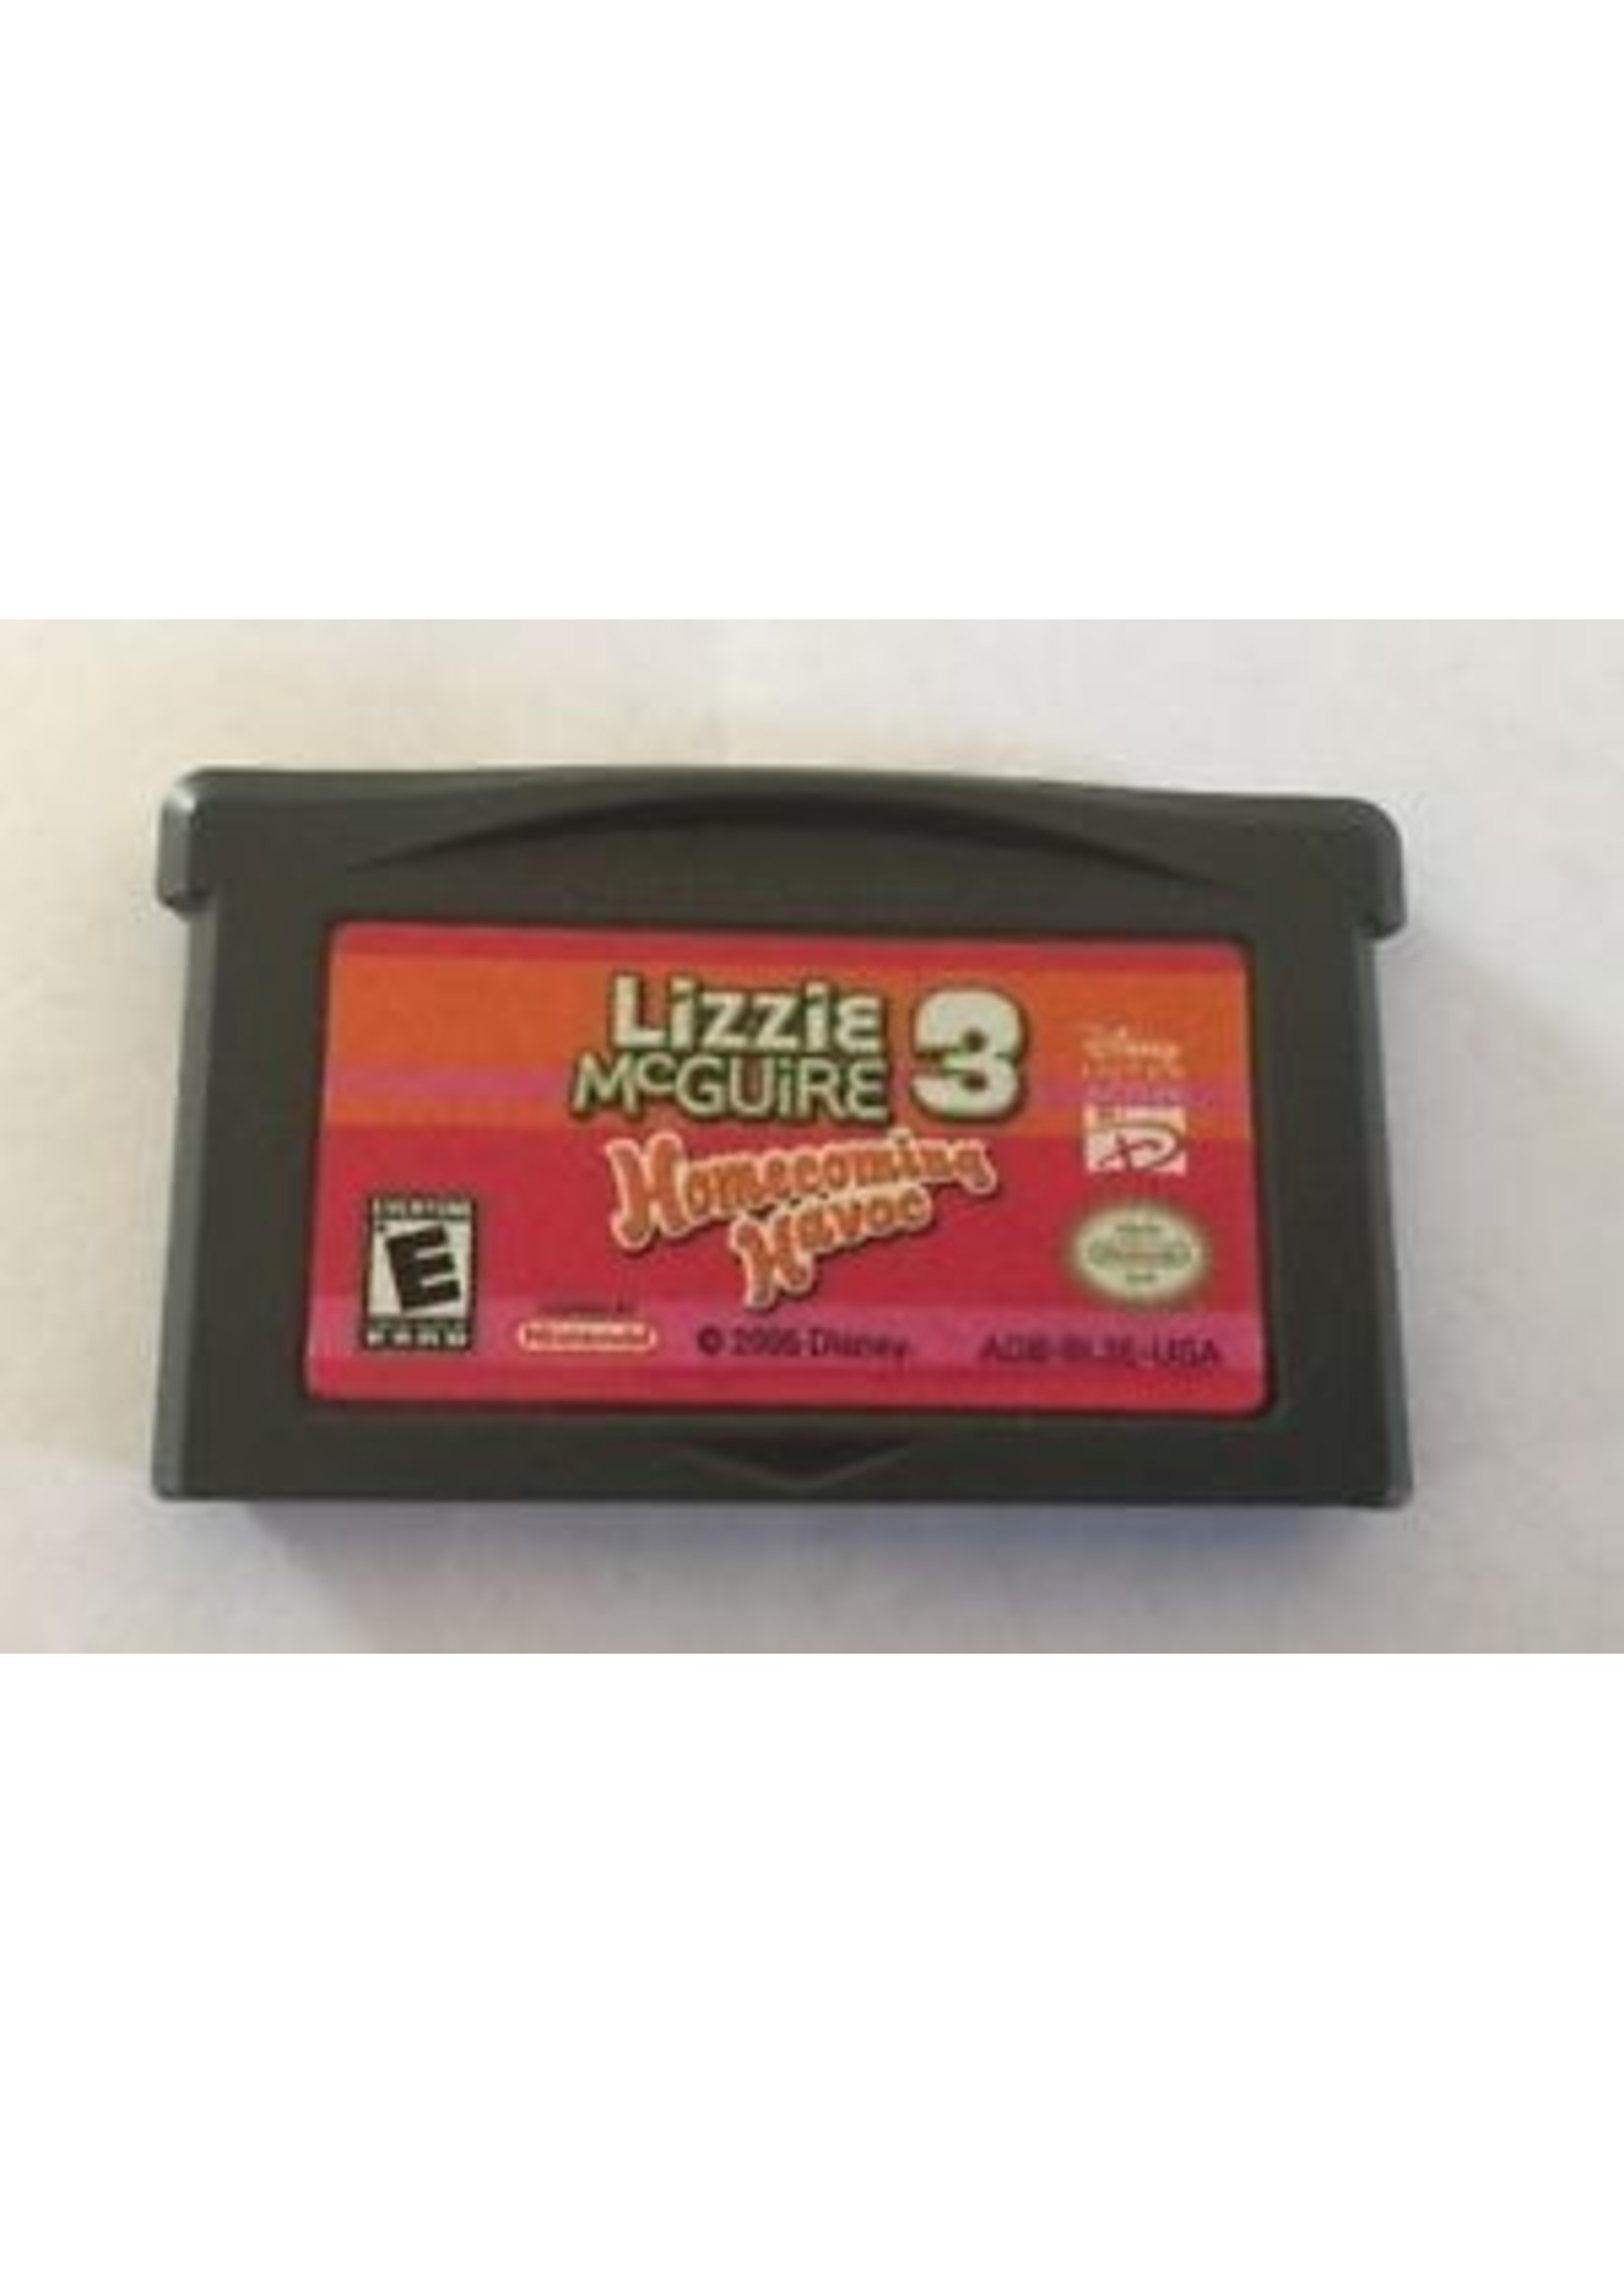 Nintendo Gameboy Advance Lizzie McGuire 3